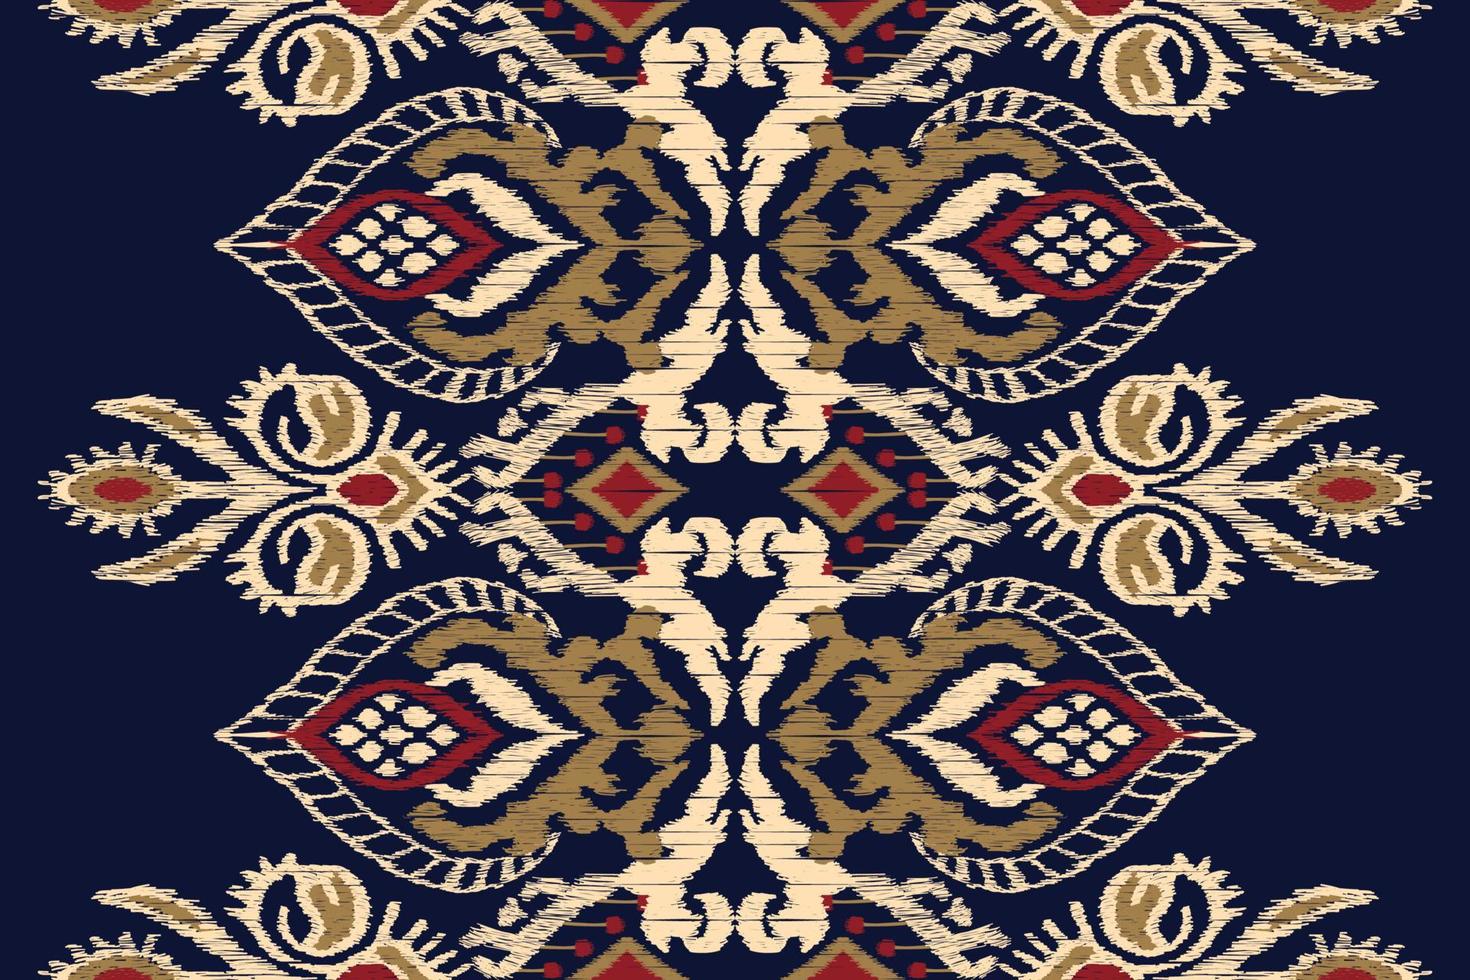 bordado floral ikat paisley sobre fondo azul marino.patrón oriental étnico geométrico tradicional.ilustración vectorial abstracta de estilo azteca.diseño para textura,tela,ropa,envoltura,decoración. vector